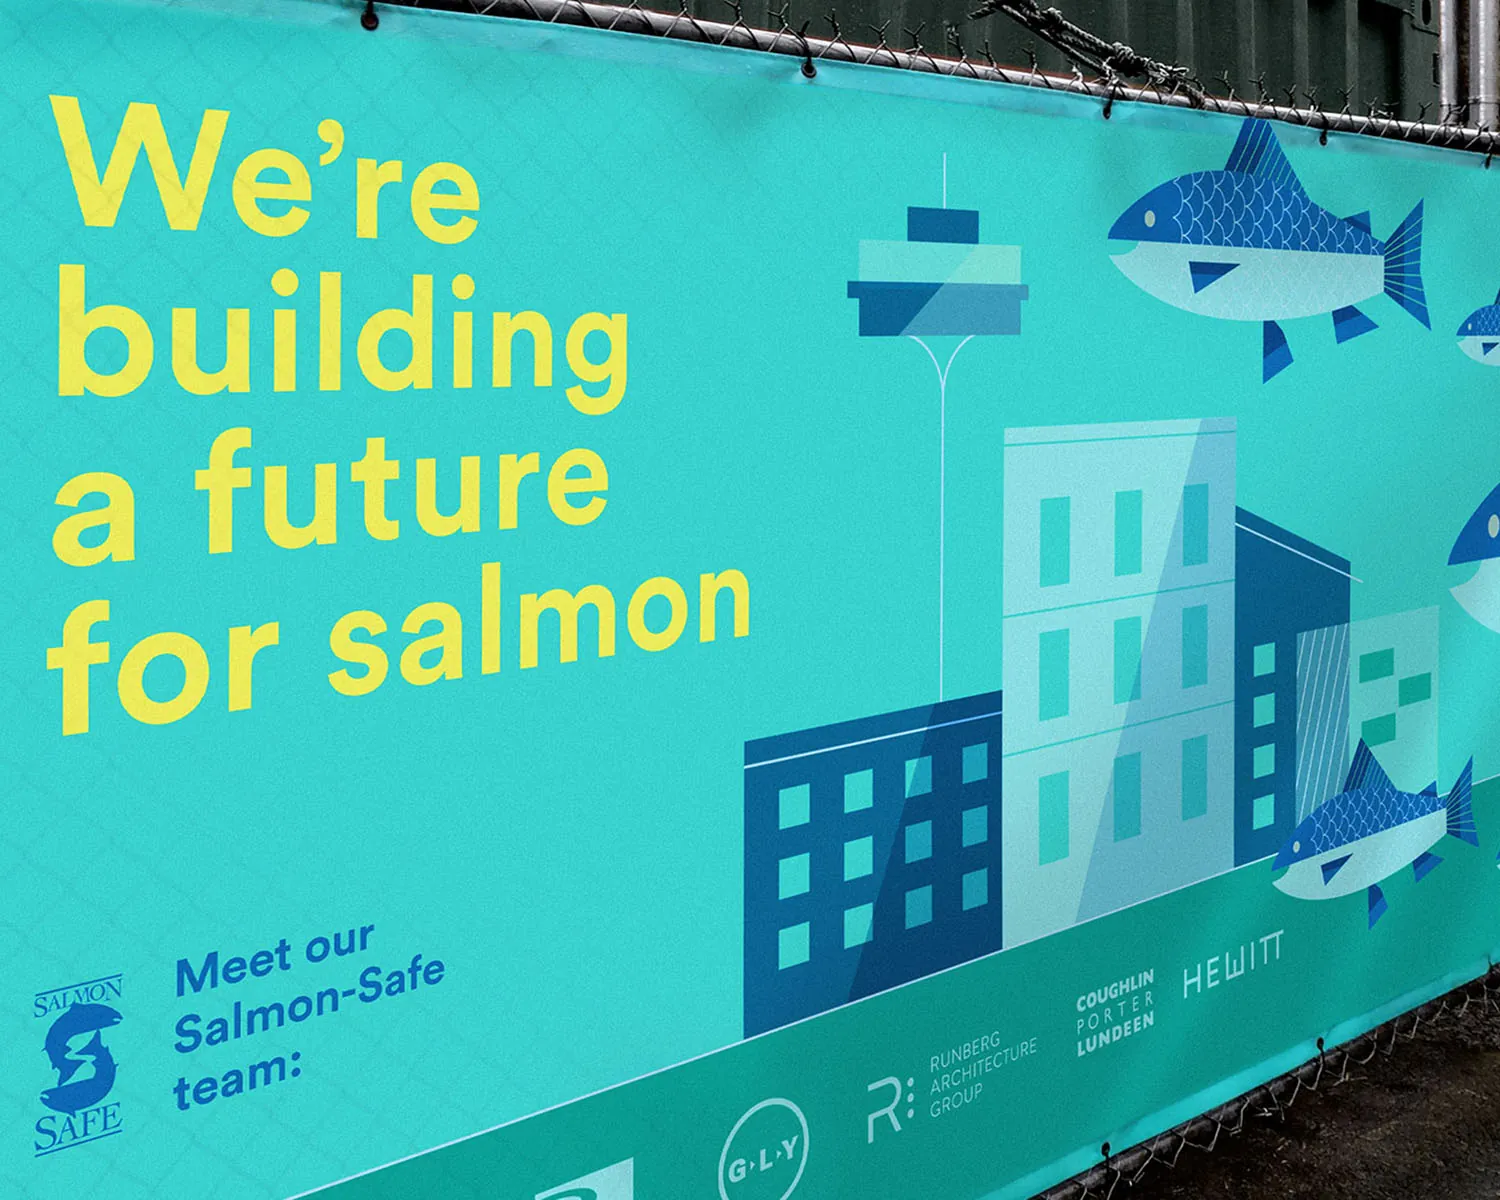 Salmon-Safe signage